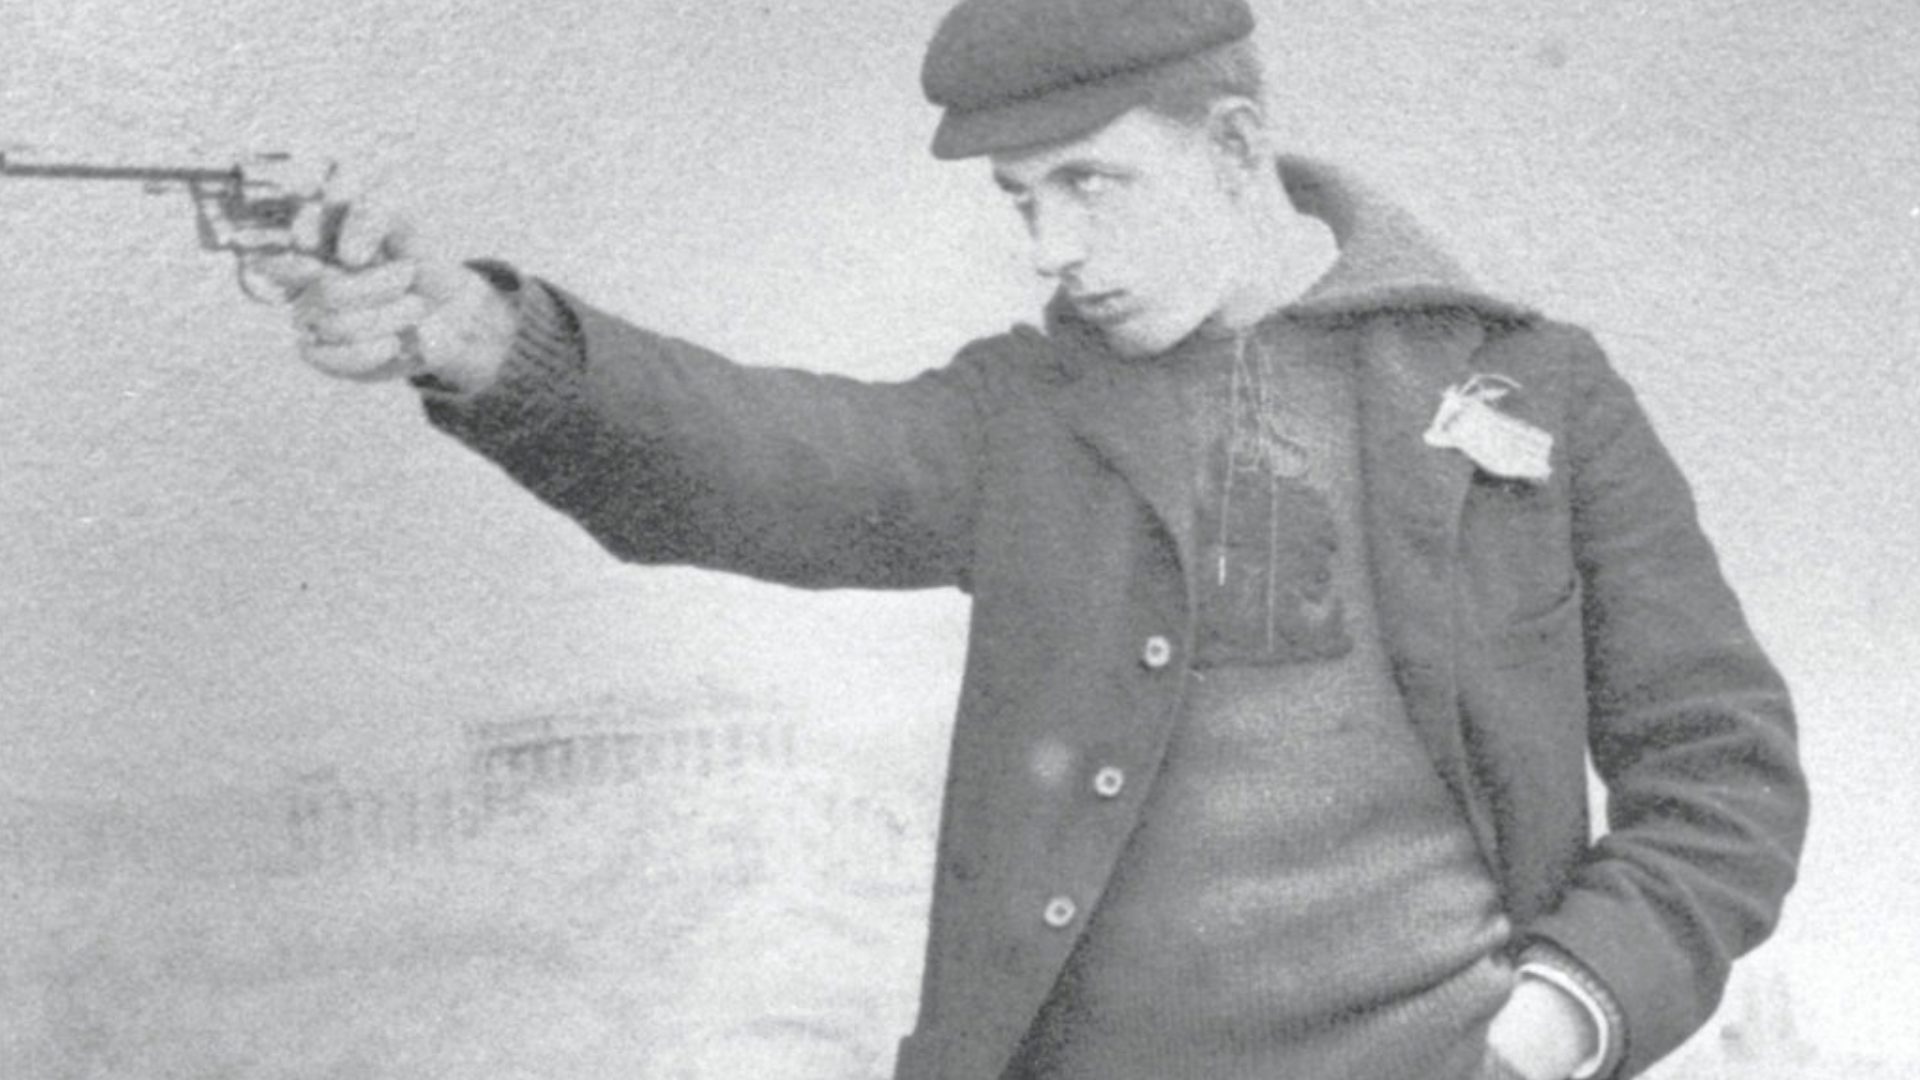 John Paine, 1896 Olympics